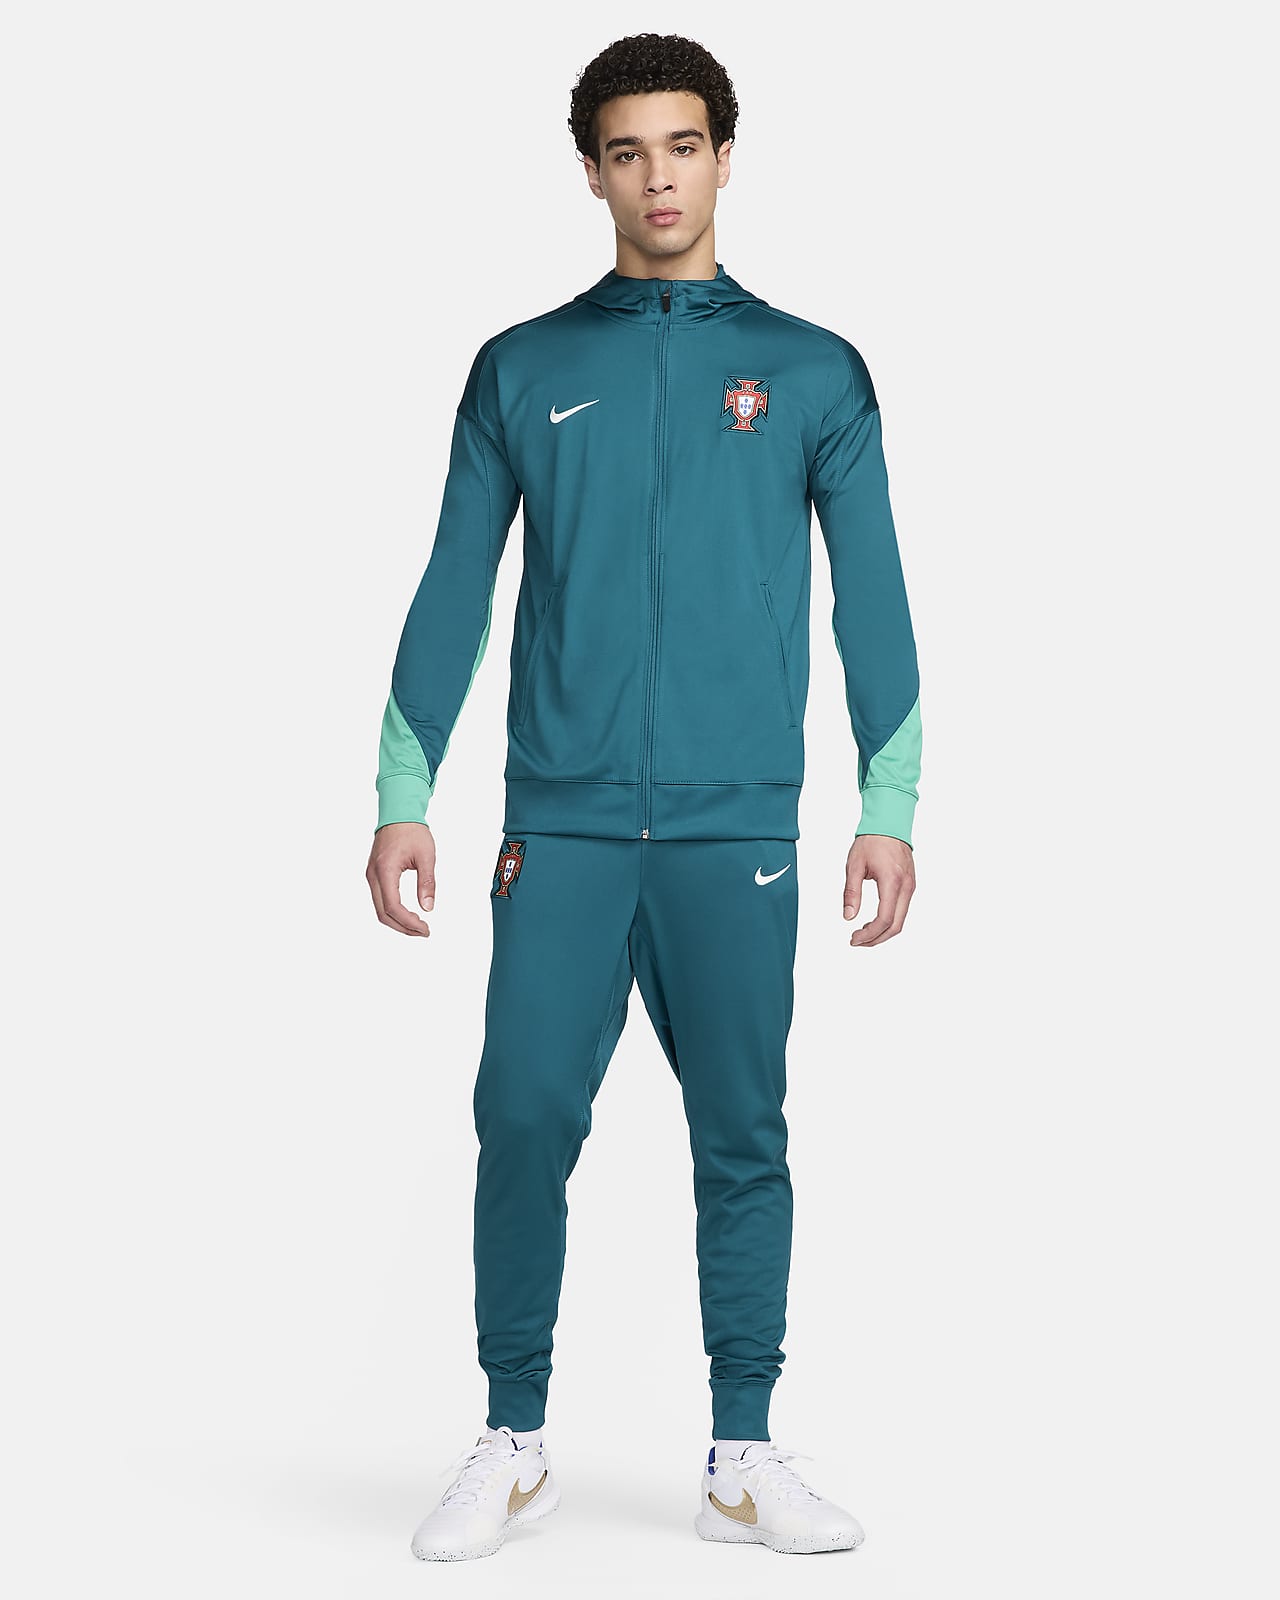 Ανδρική ποδοσφαιρική πλεκτή φόρμα με κουκούλα Nike Dri-FIT Πορτογαλία Strike